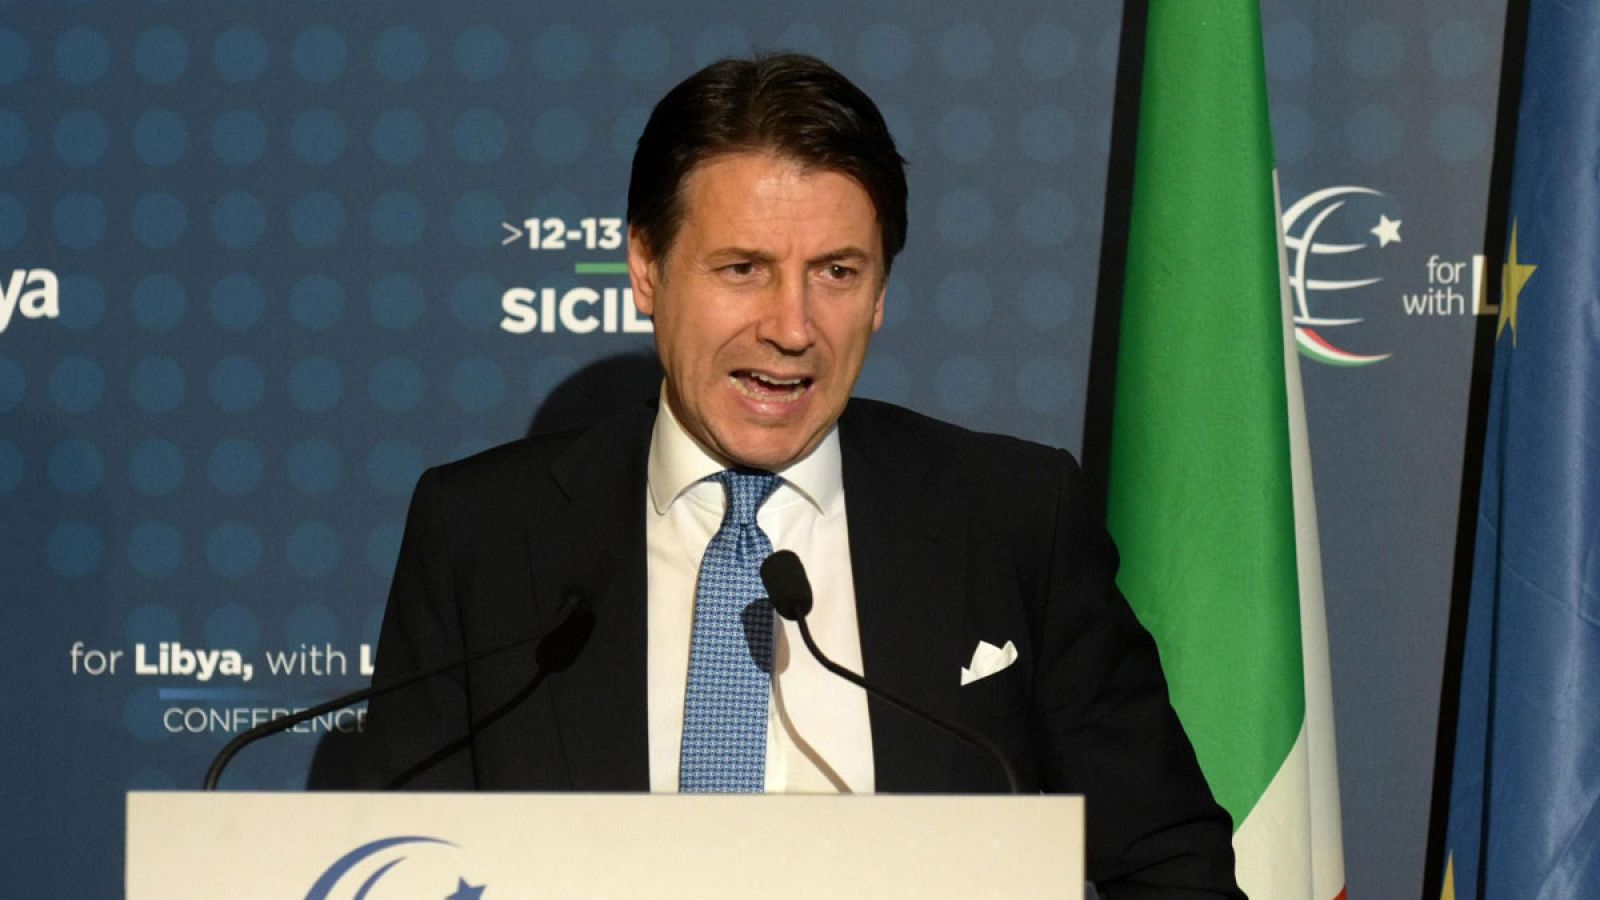 El primer ministro italiano, Giuseppe Conte, en una rueda de prensa durante la conferencia sobre Libia celebrada en Palermo